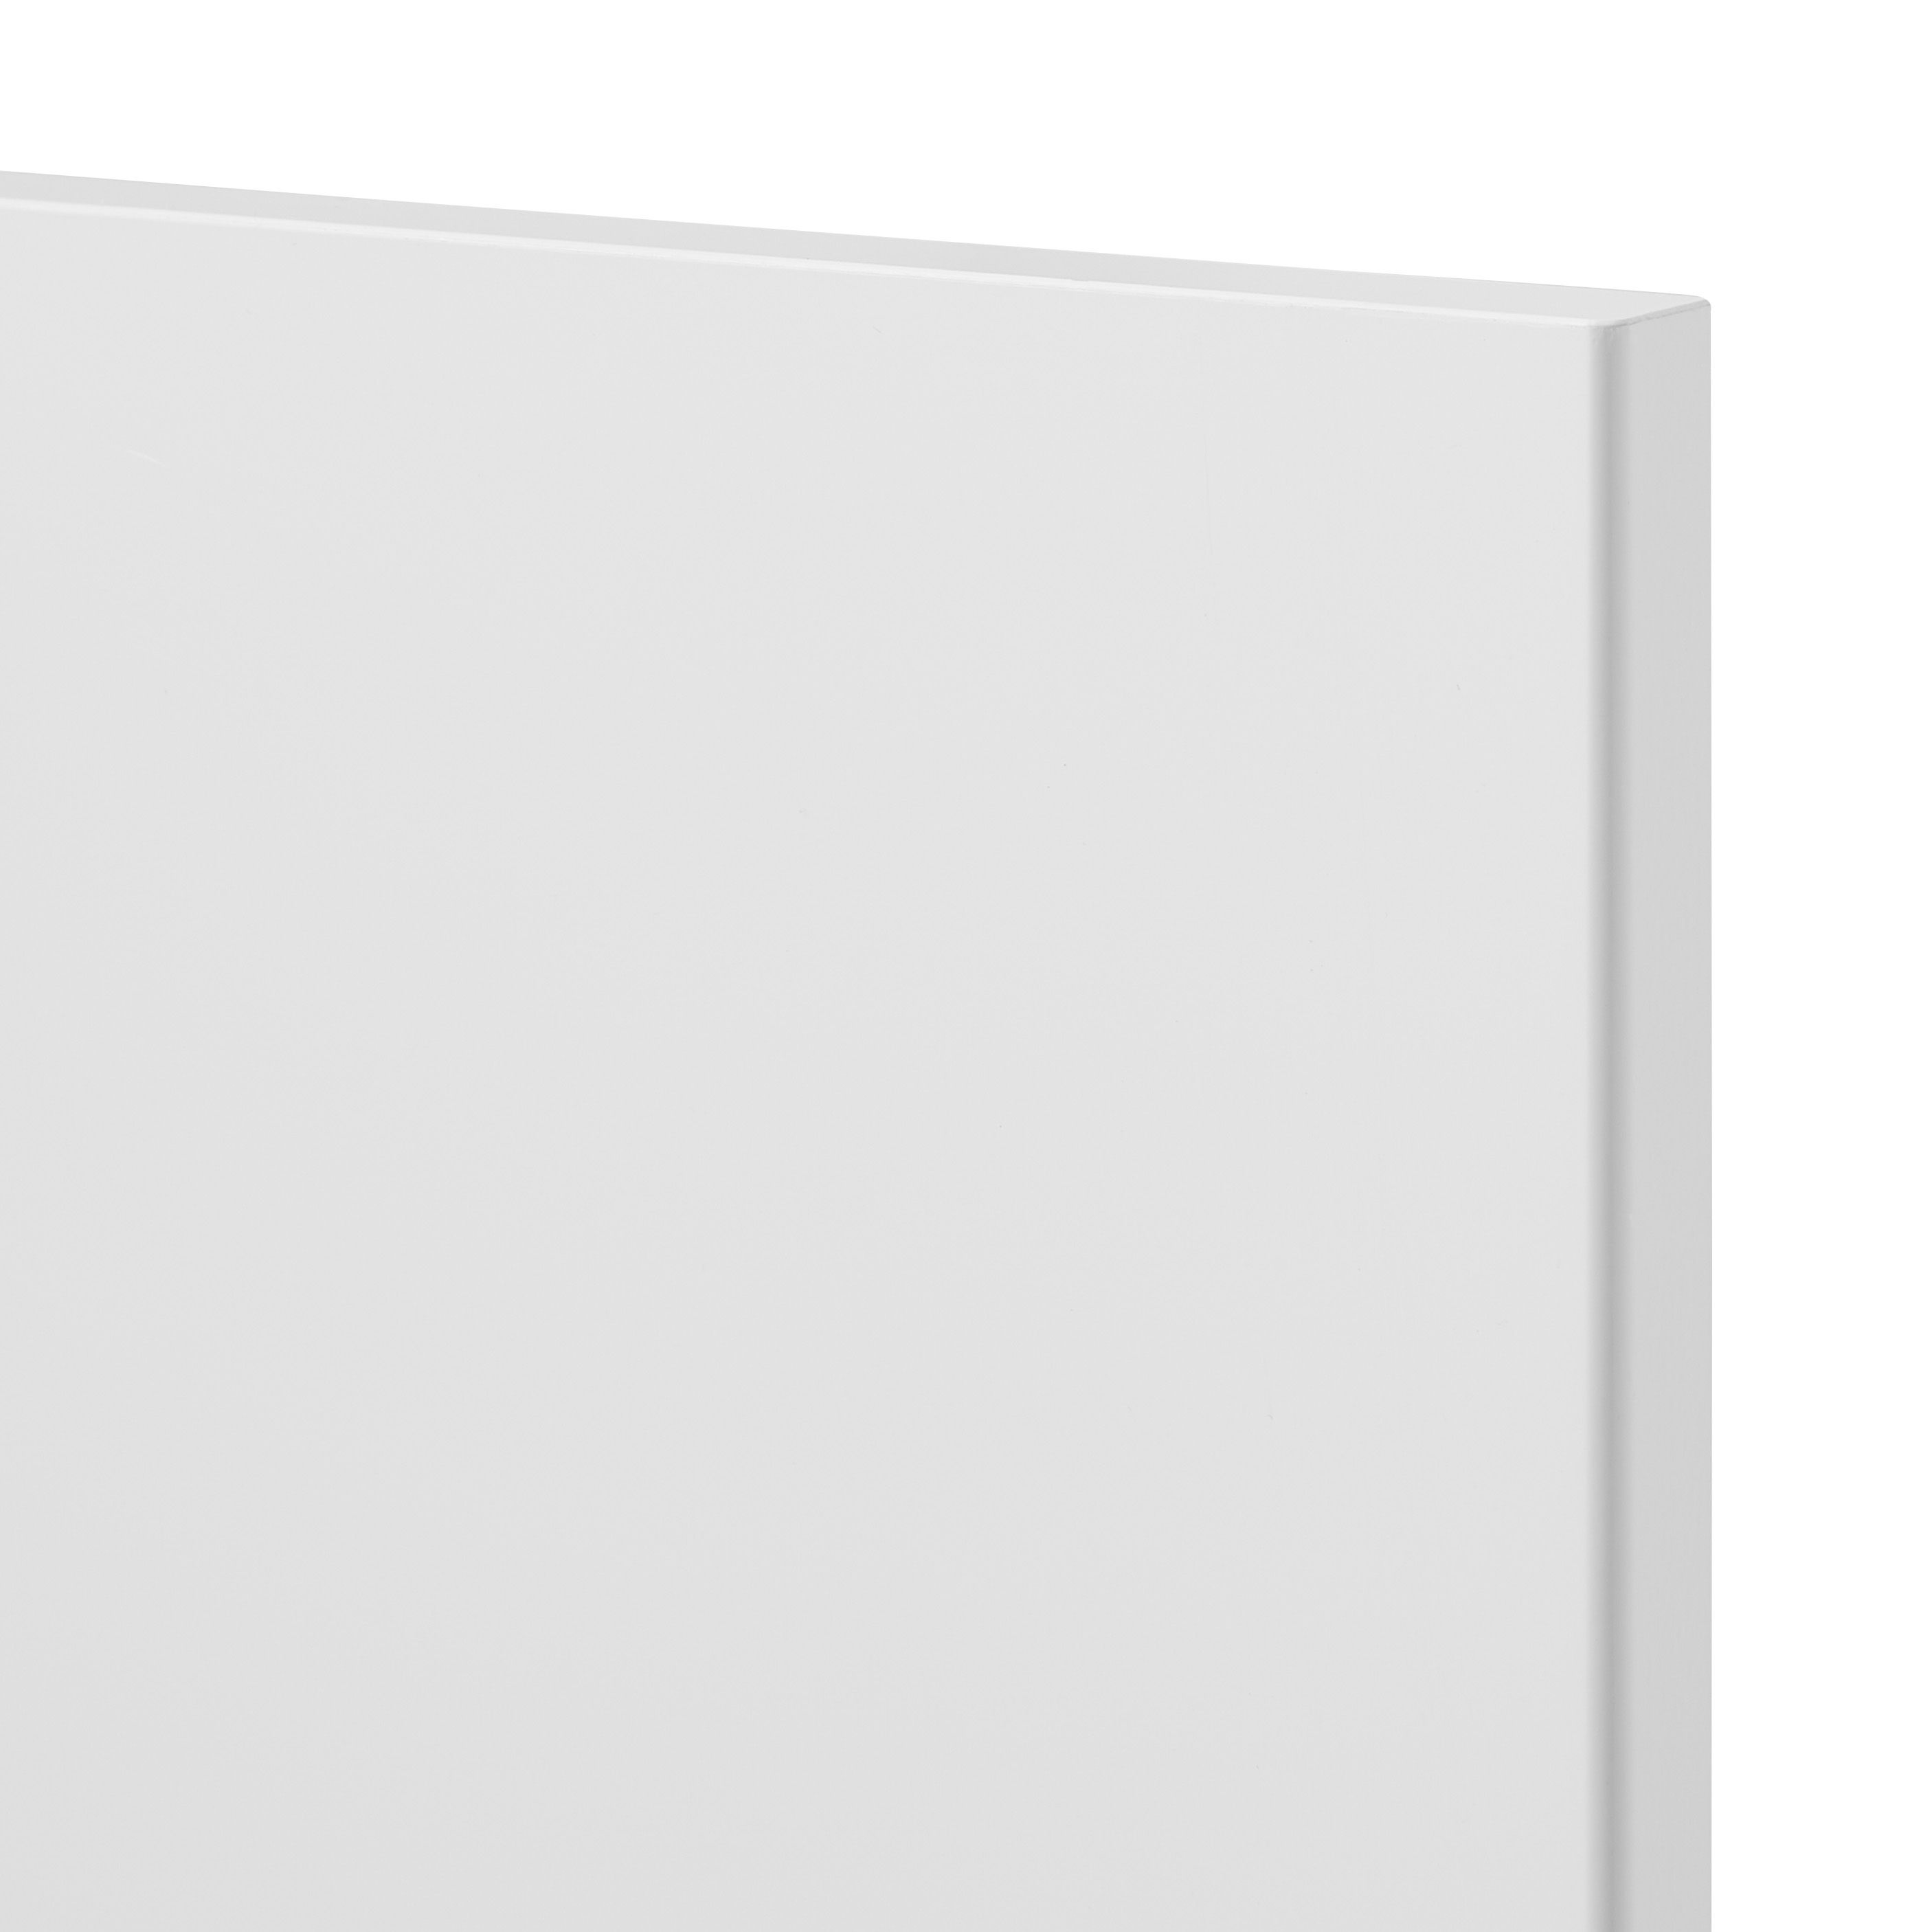 GoodHome Stevia Gloss white slab Tall larder Cabinet door (W)600mm (H)1181mm (T)18mm